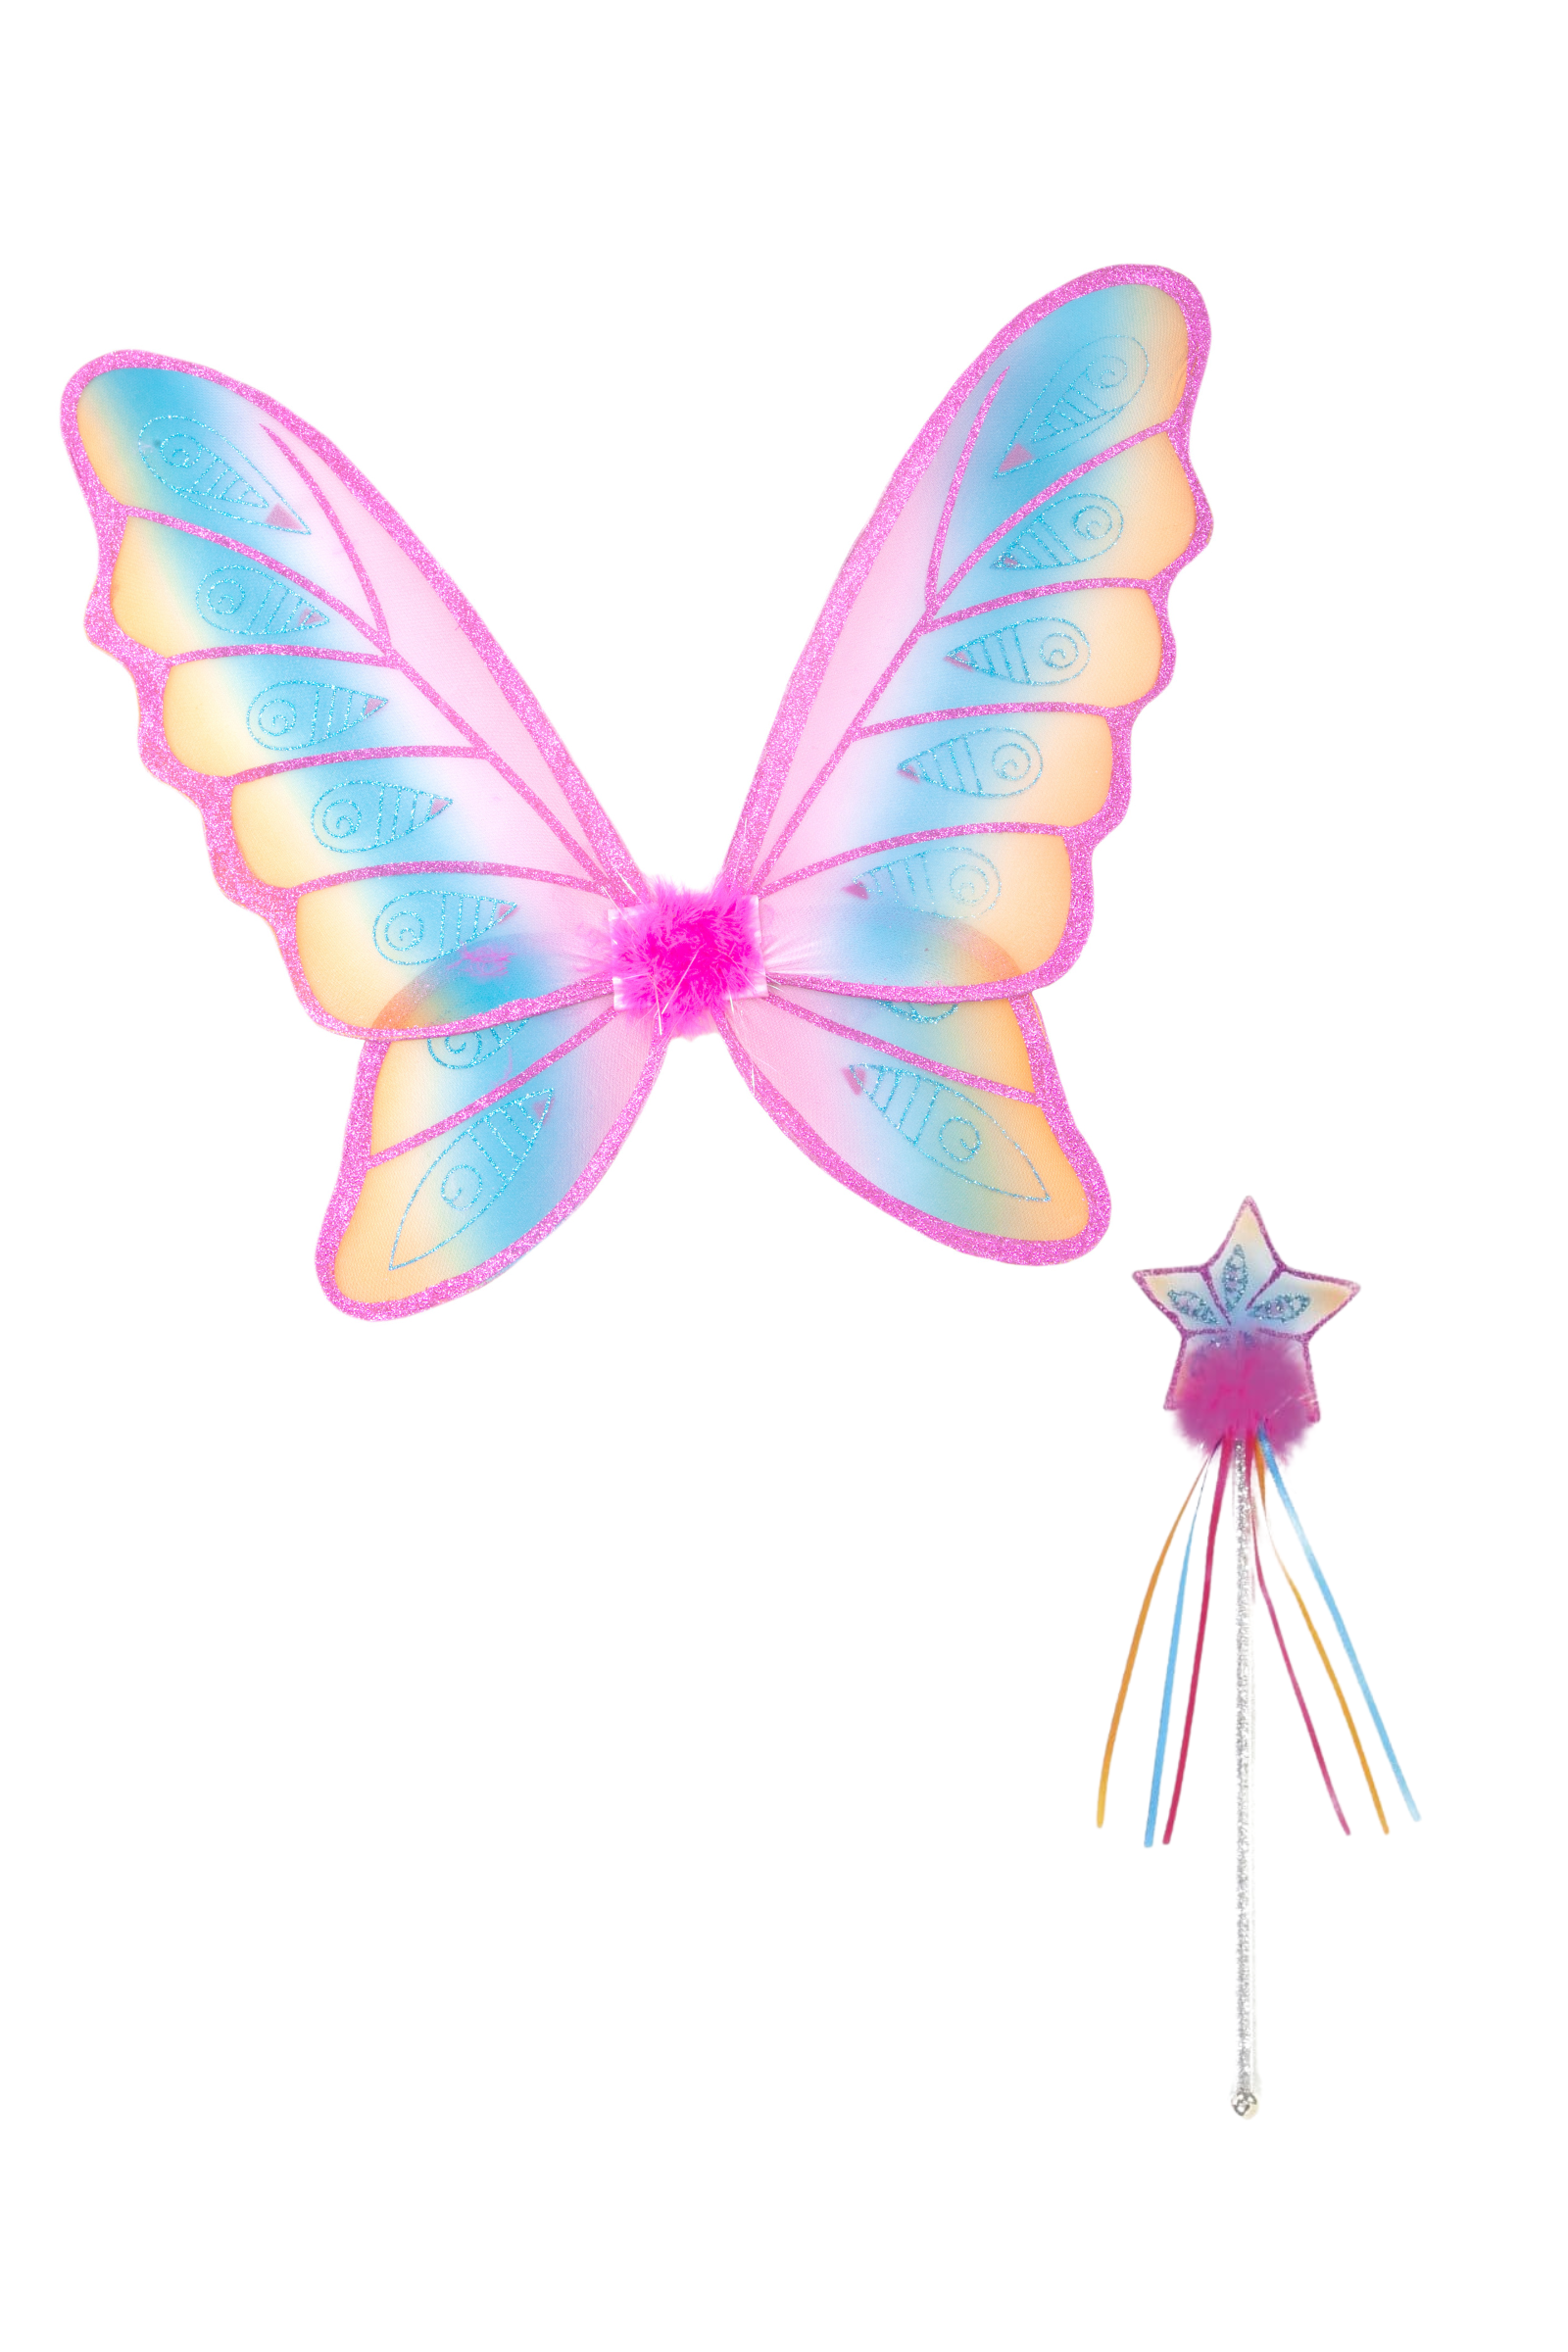 Glitter Rainbow Wings & Wand Bundle, Hot Pink